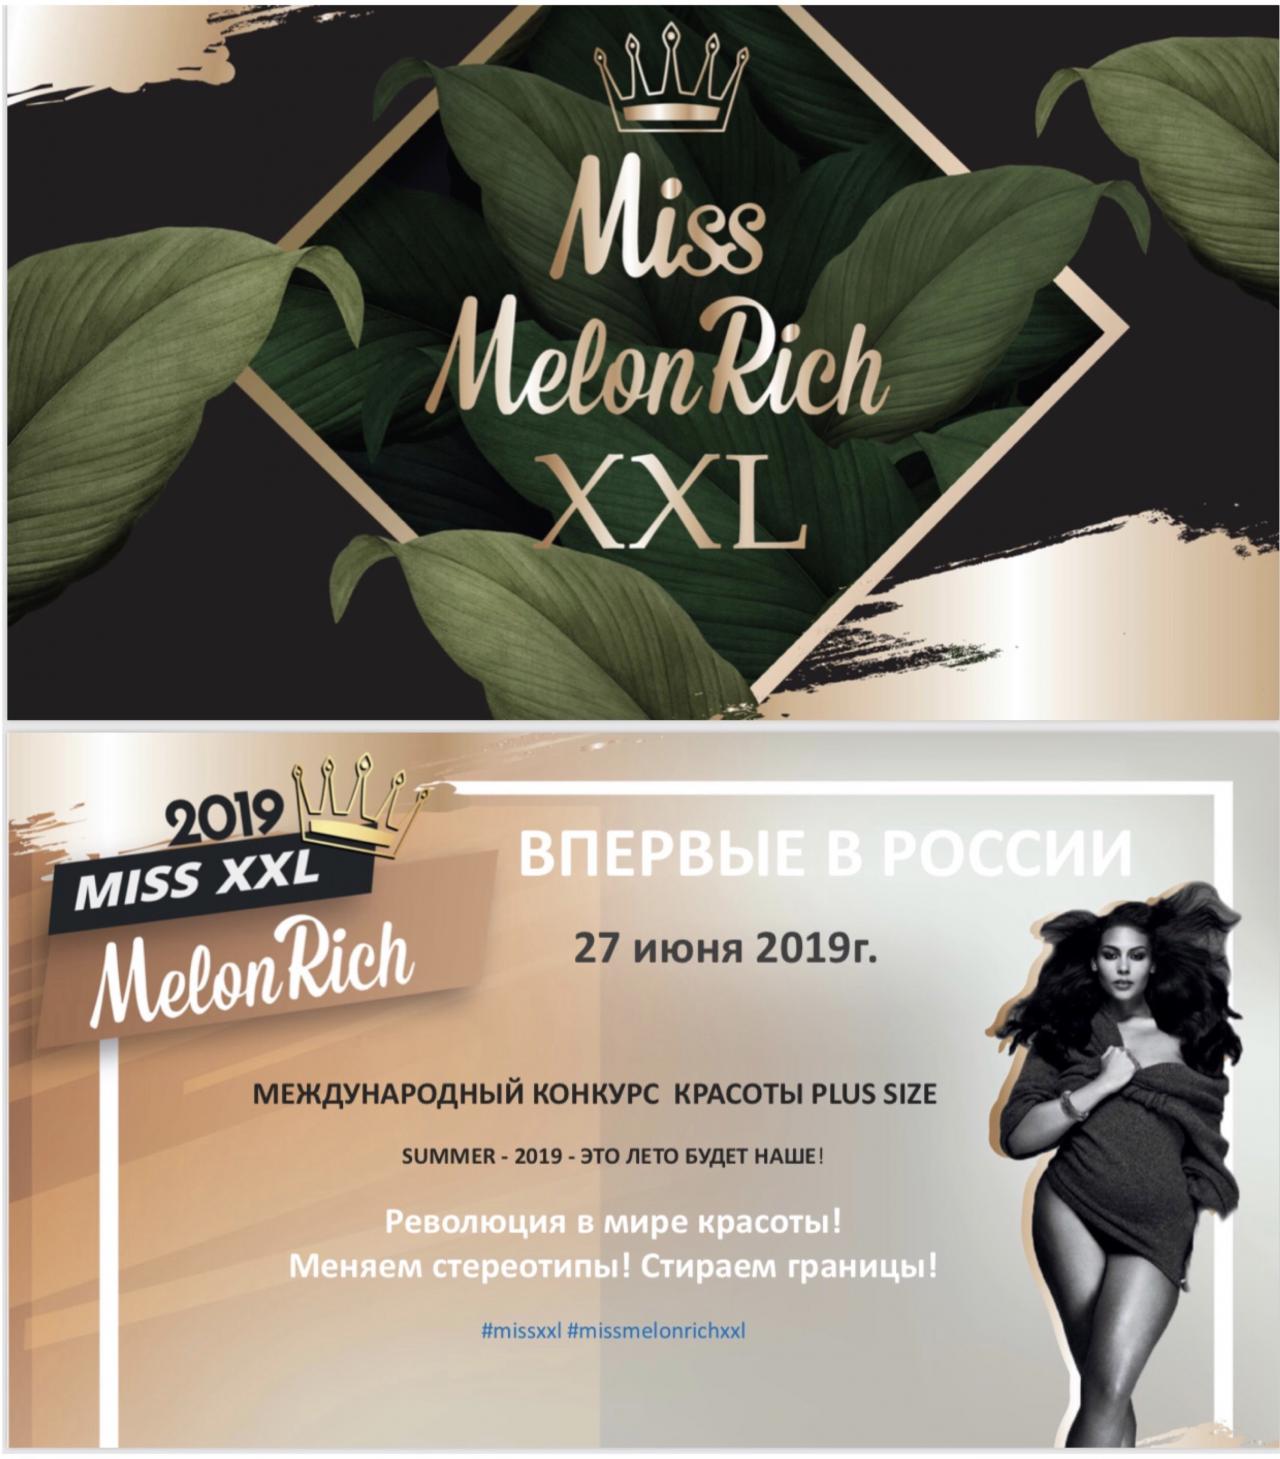 MISS MELON RICH XXL